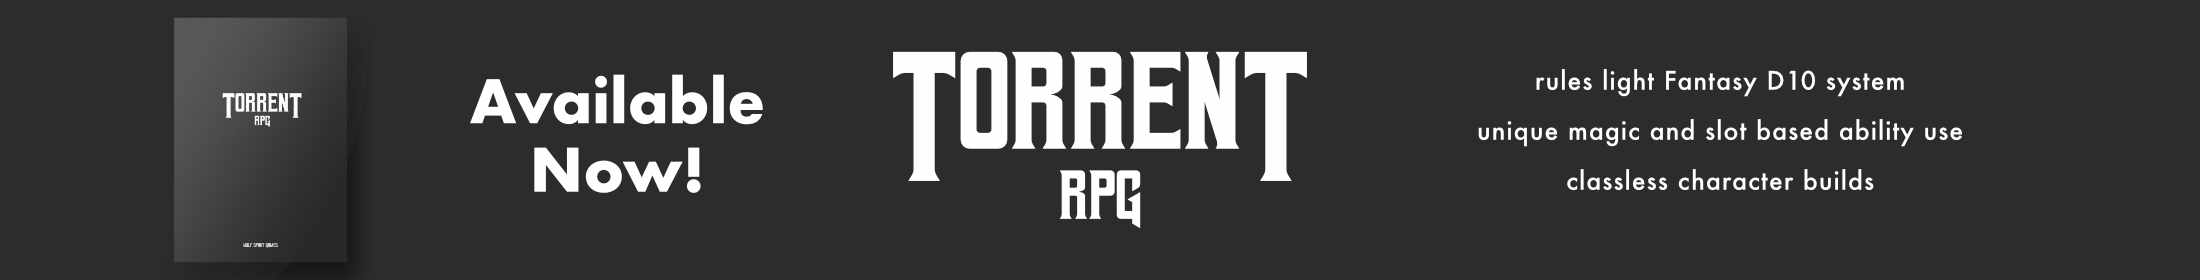 Torrent RPG